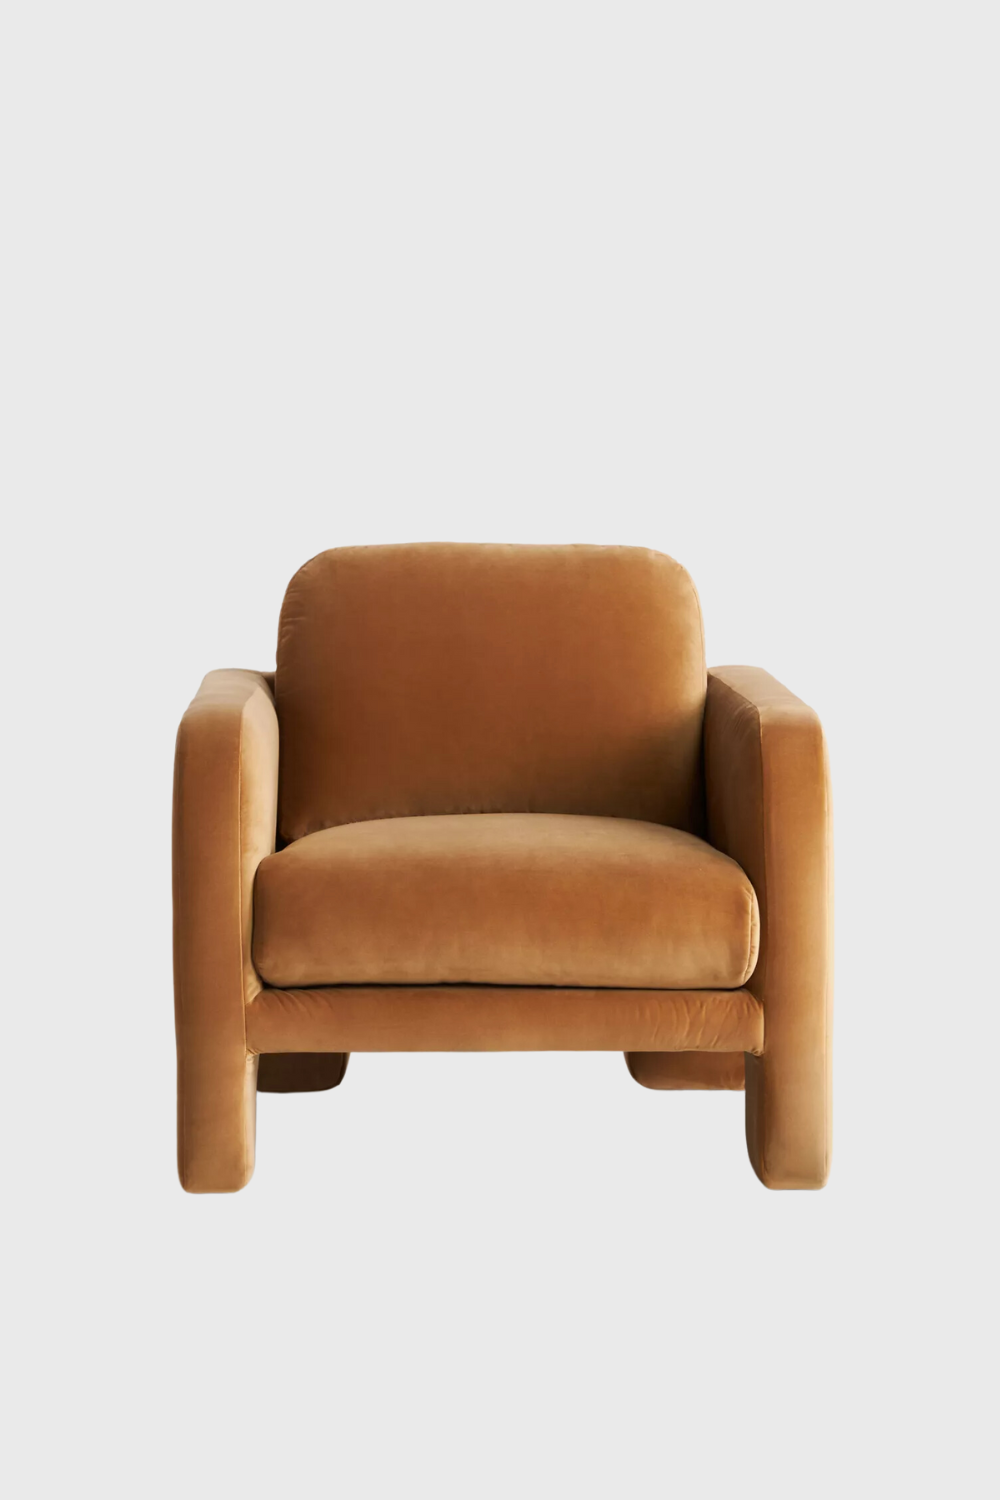 velvet lawson chair